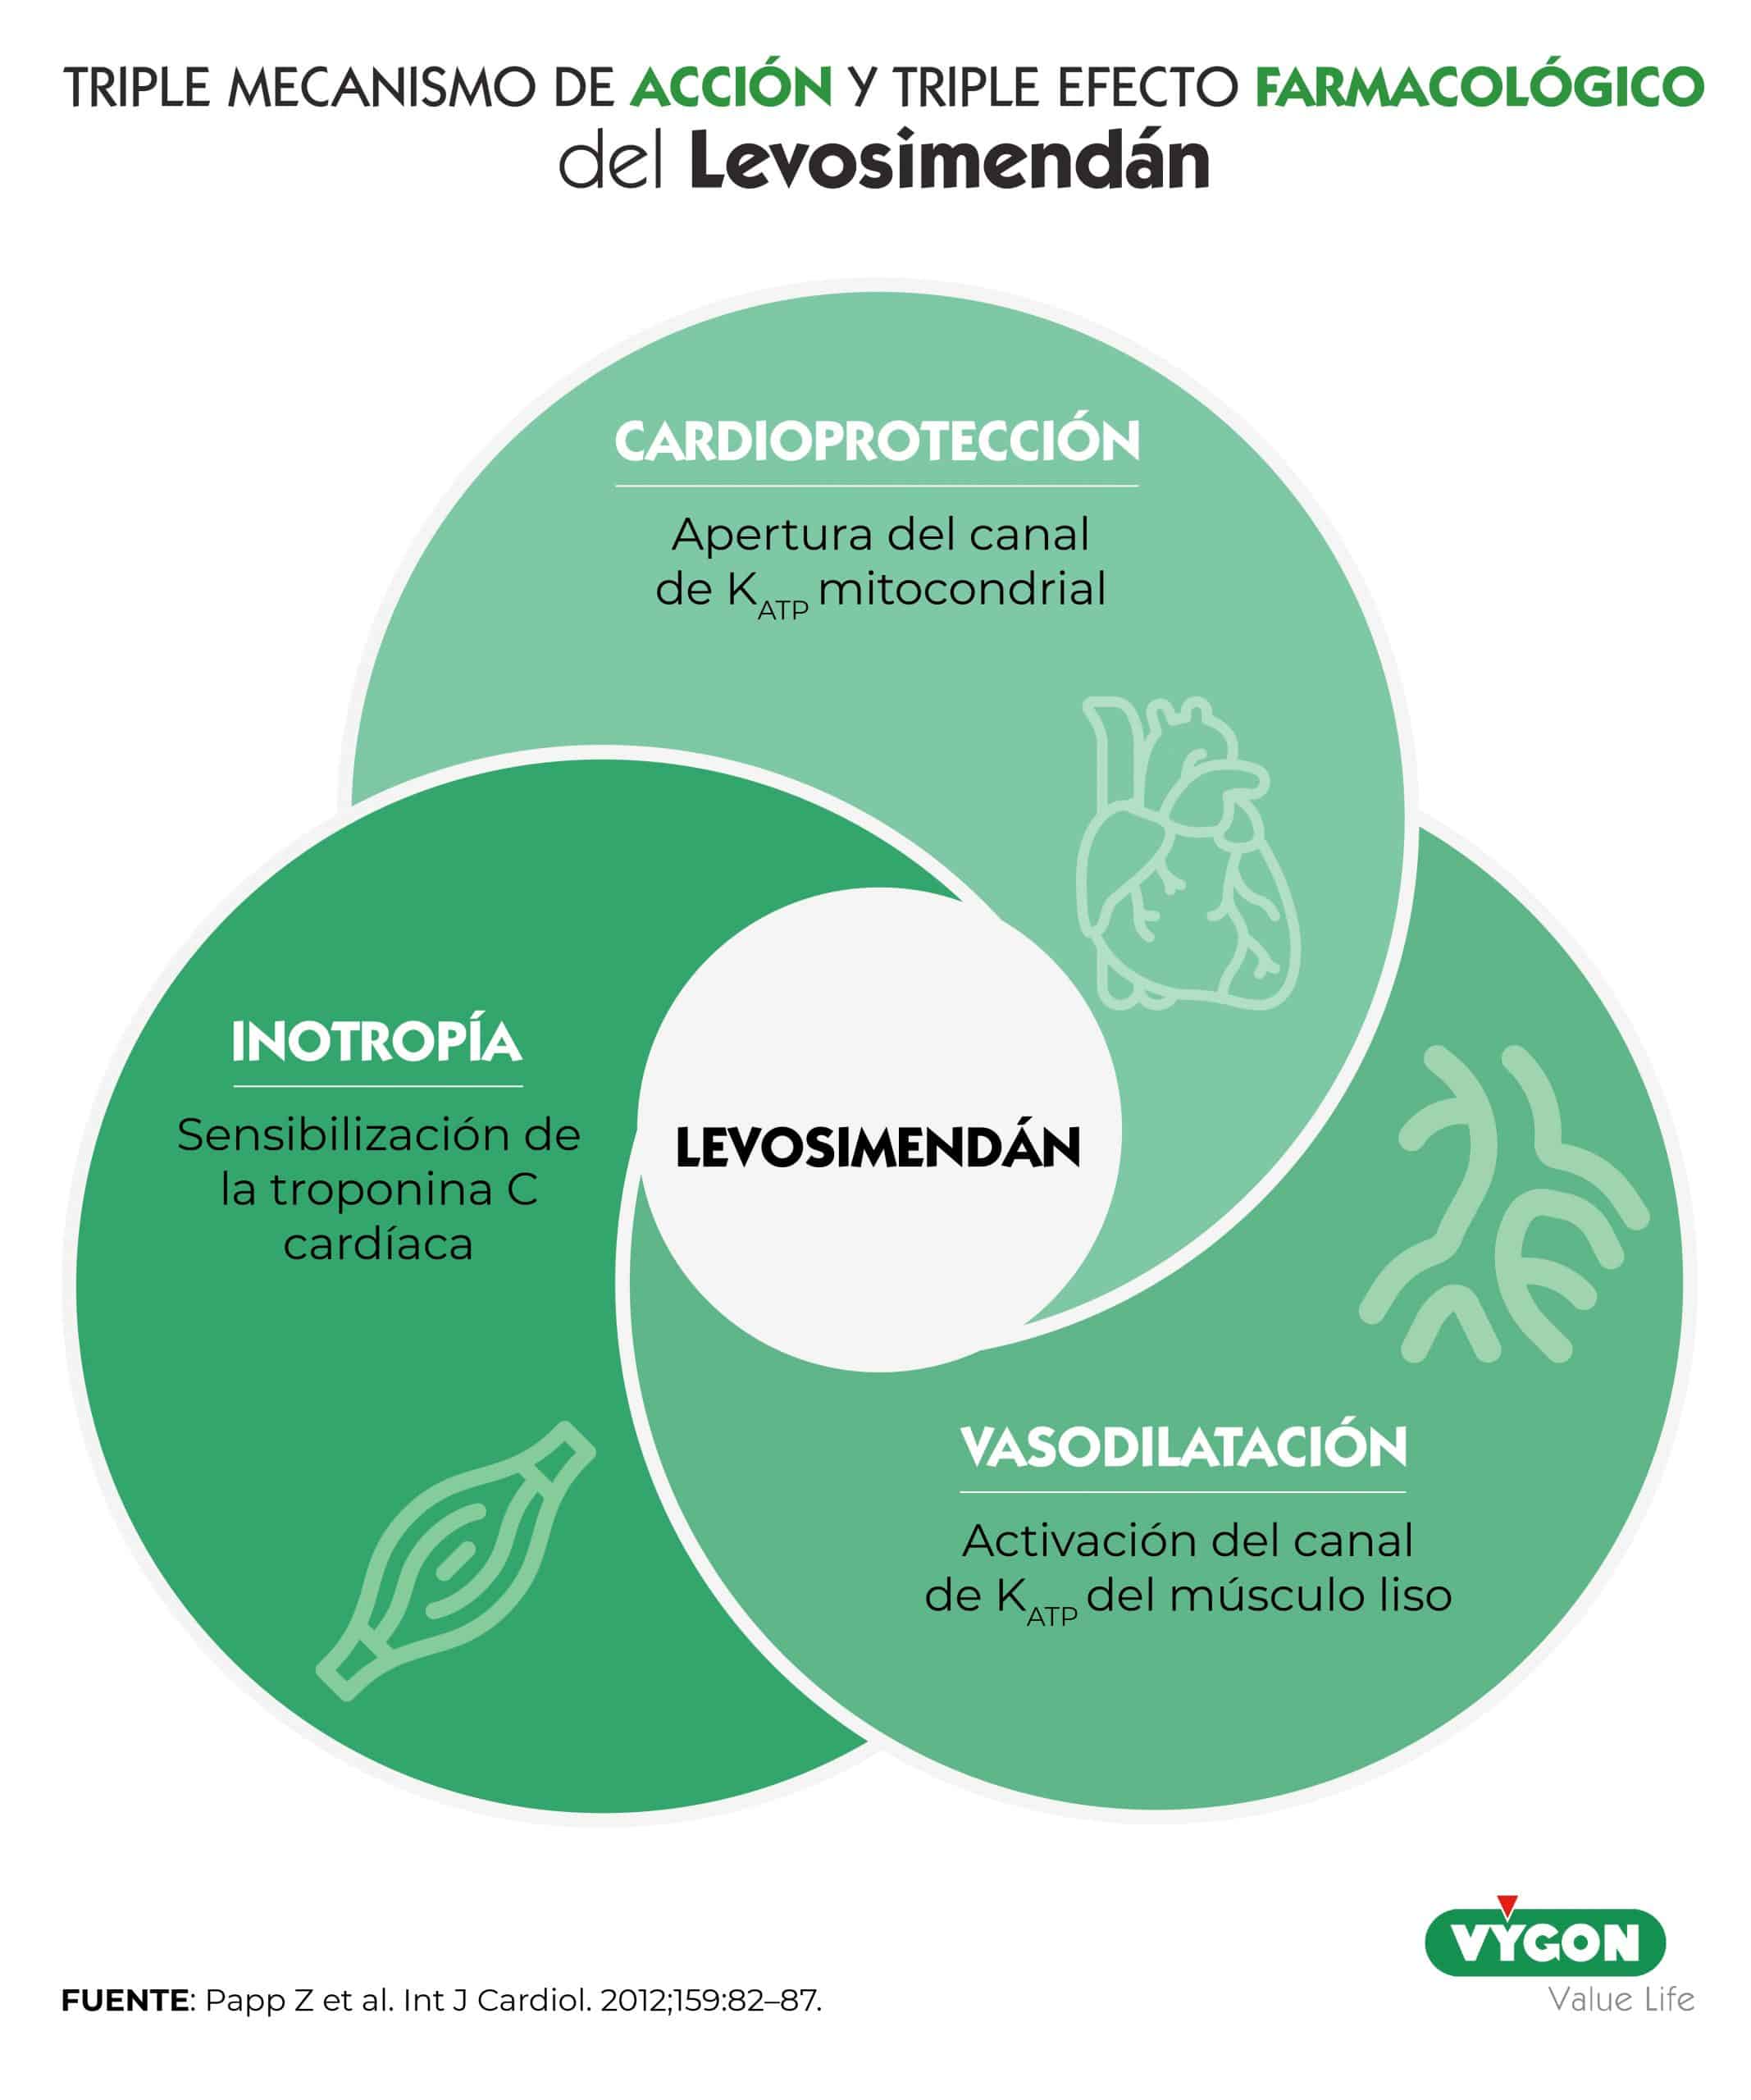 Figura 3: Triple mecanismo de acción y triple efecto farmacológico del Levosimendán [18].